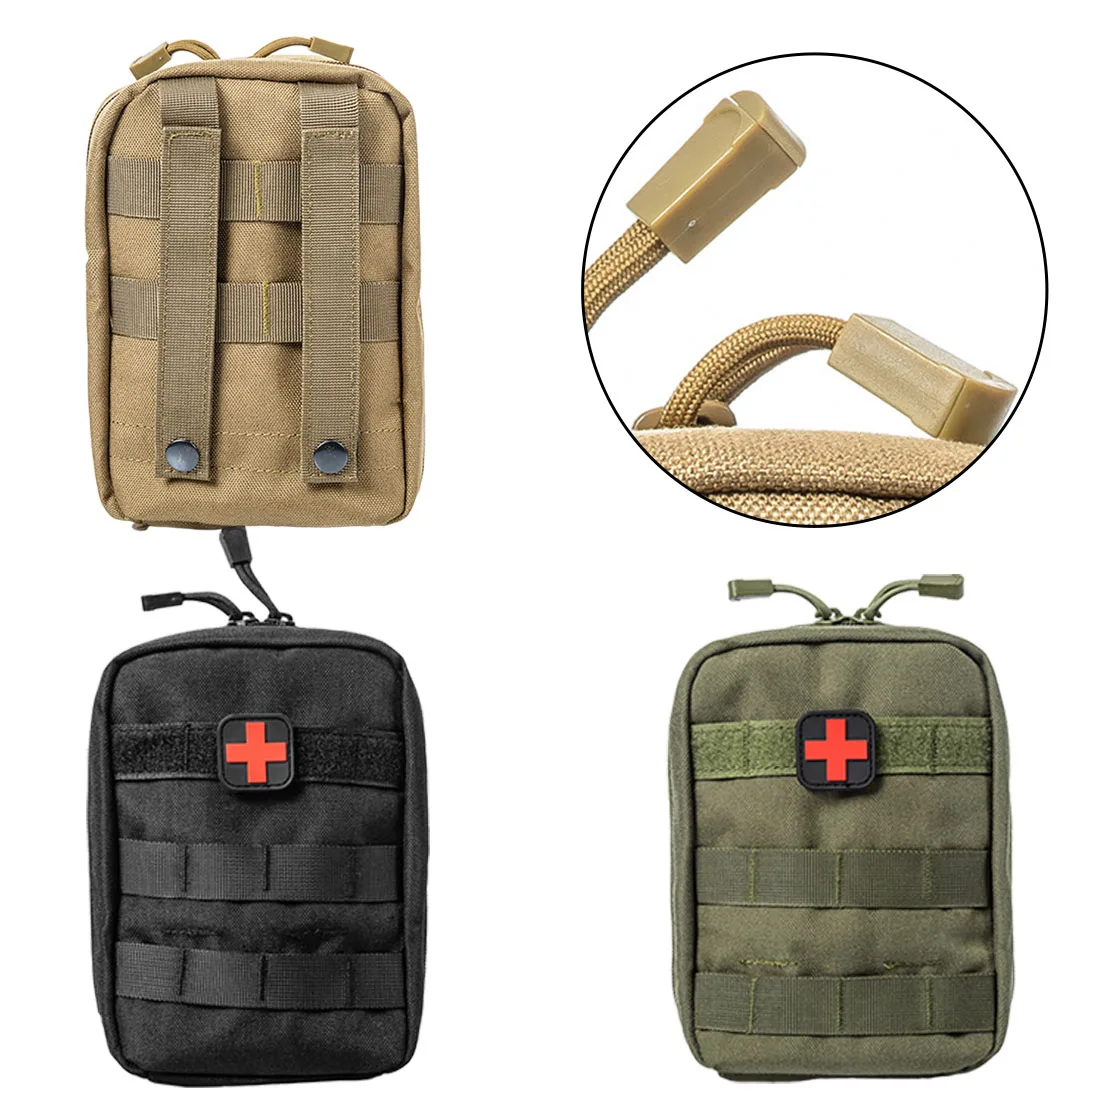 Горячий Открытый походный набор для выживания тактический Медицинский Рюкзак аптечка EMT чехол аварийный военный охотничий универсальный ремень сумка